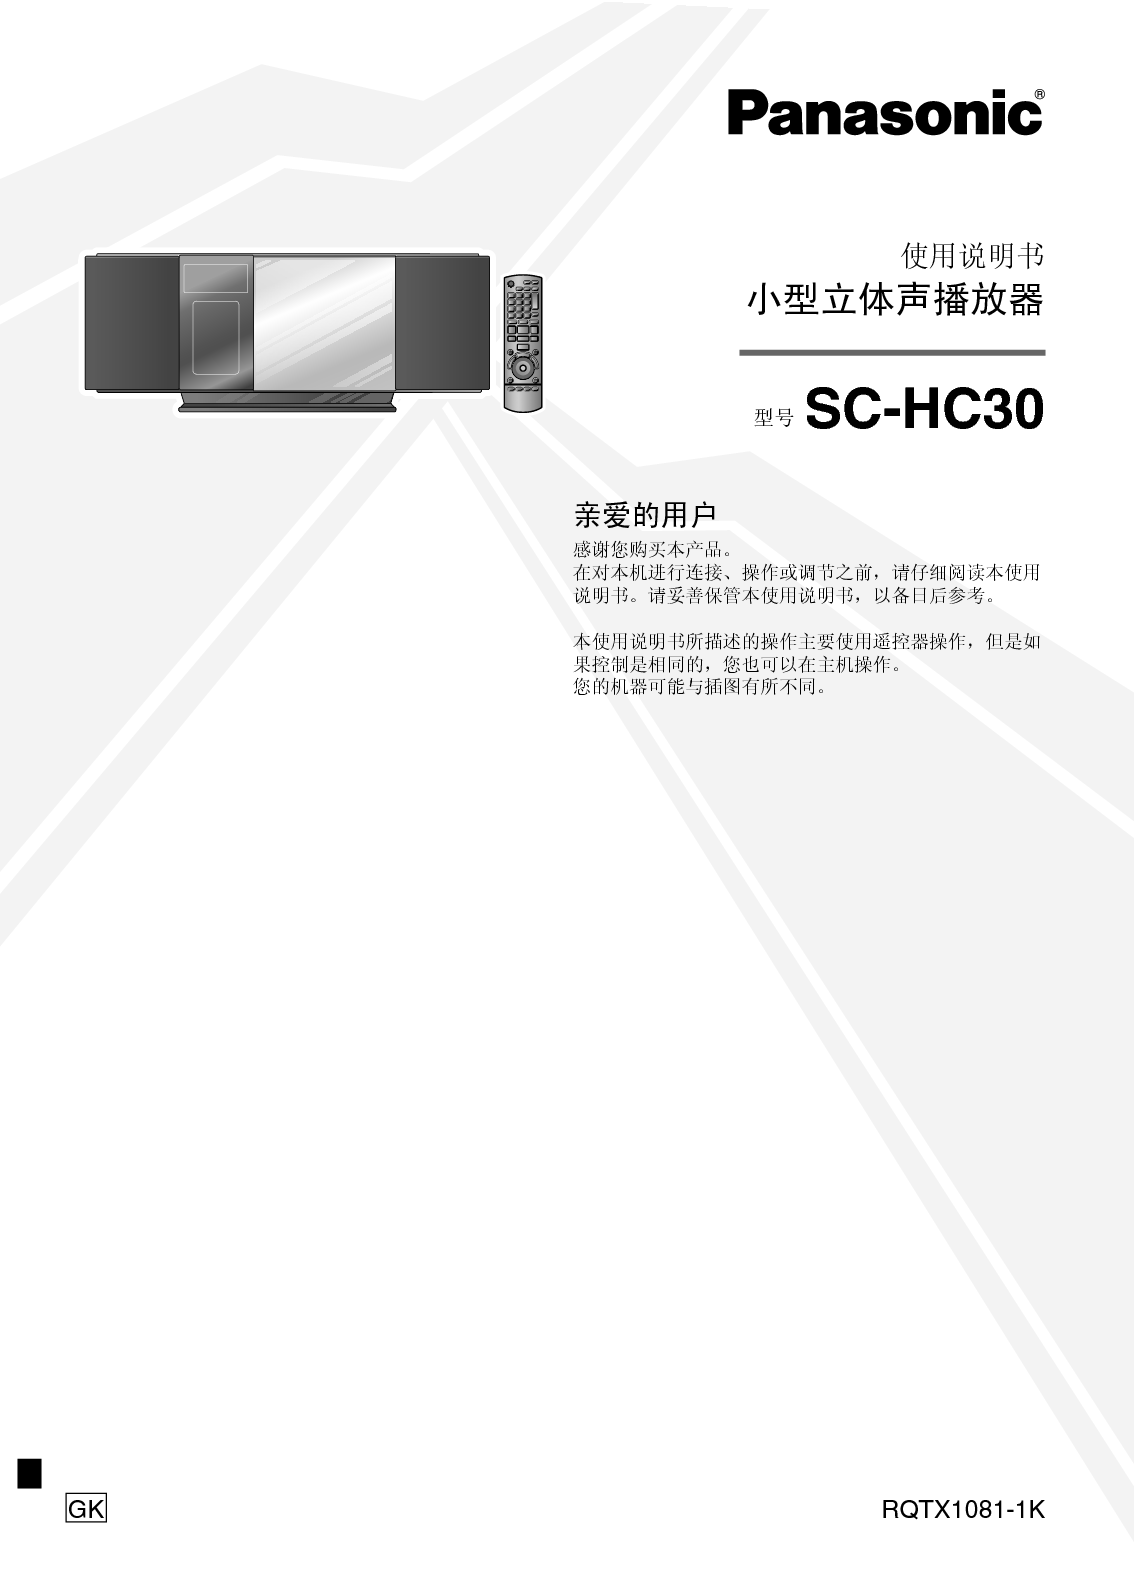 松下 Panasonic SC-HC30 说明书 封面